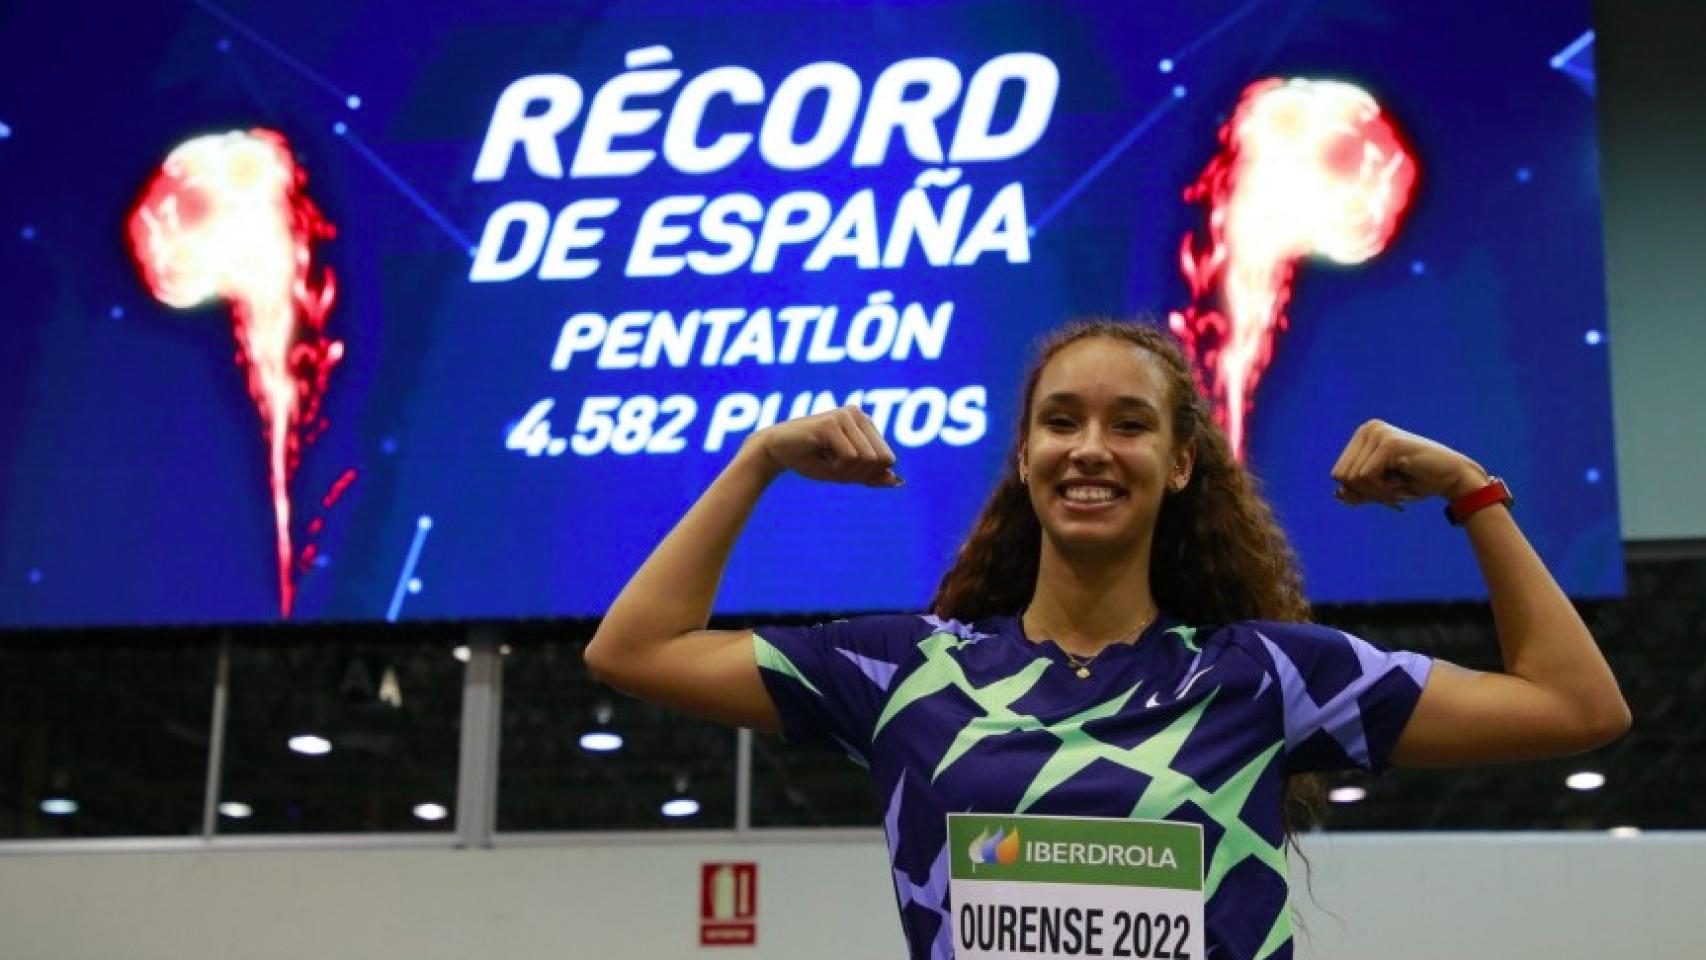 María Vicente celebrando su récord de España de pentatlón